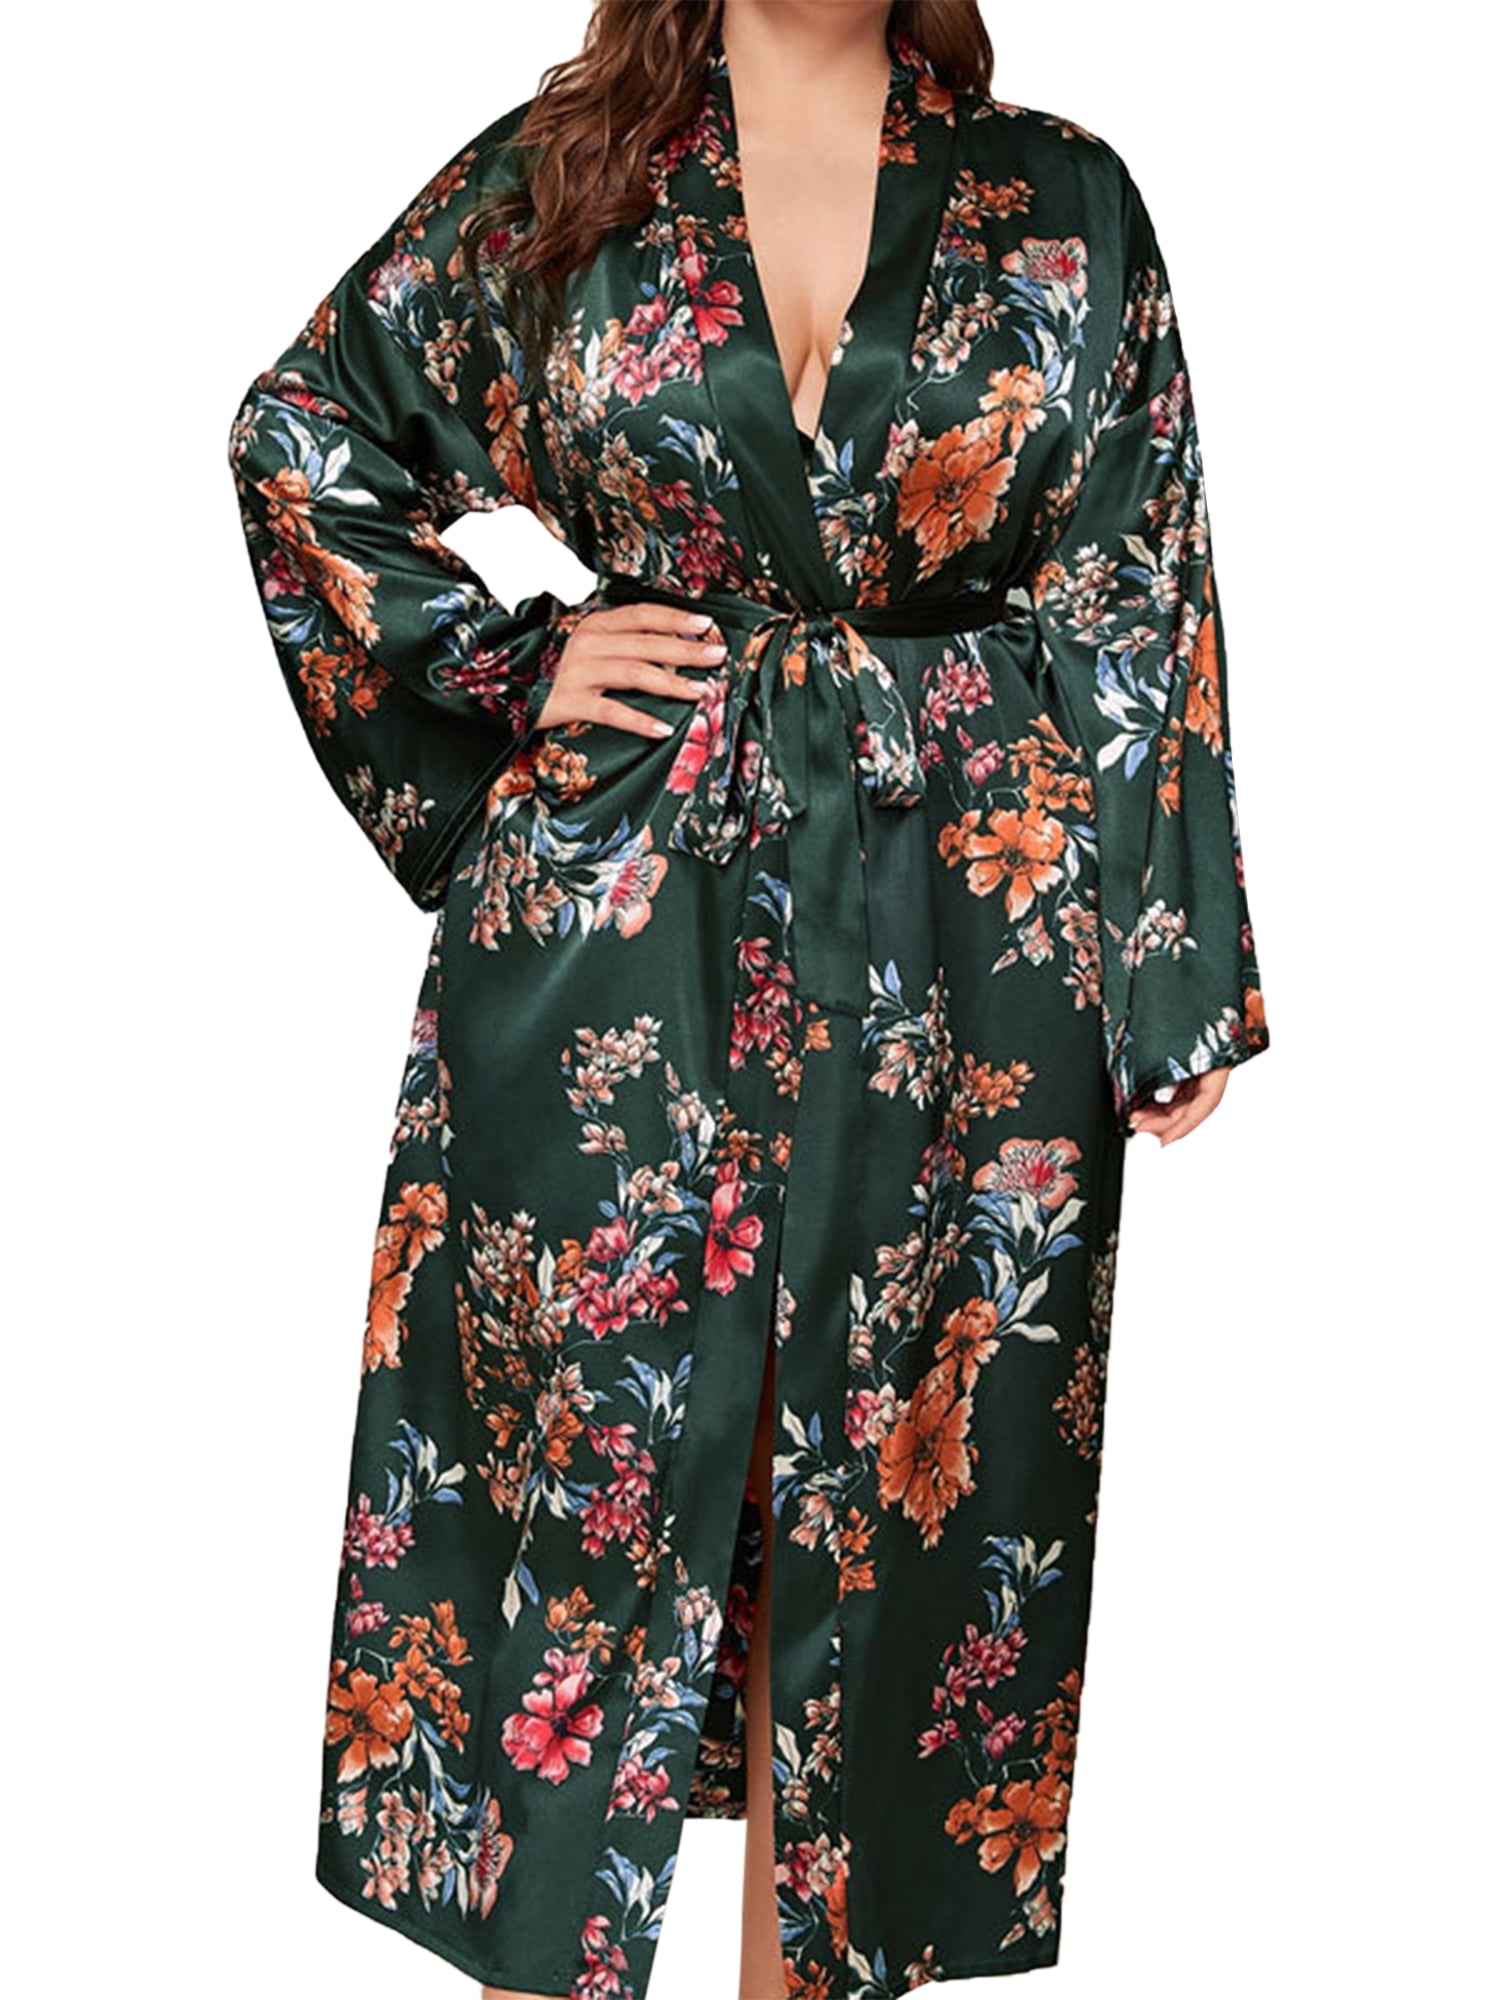 Indian Long Kimono Floral Printed Dress Women Robe Dressing Gown Plus Size Dress 